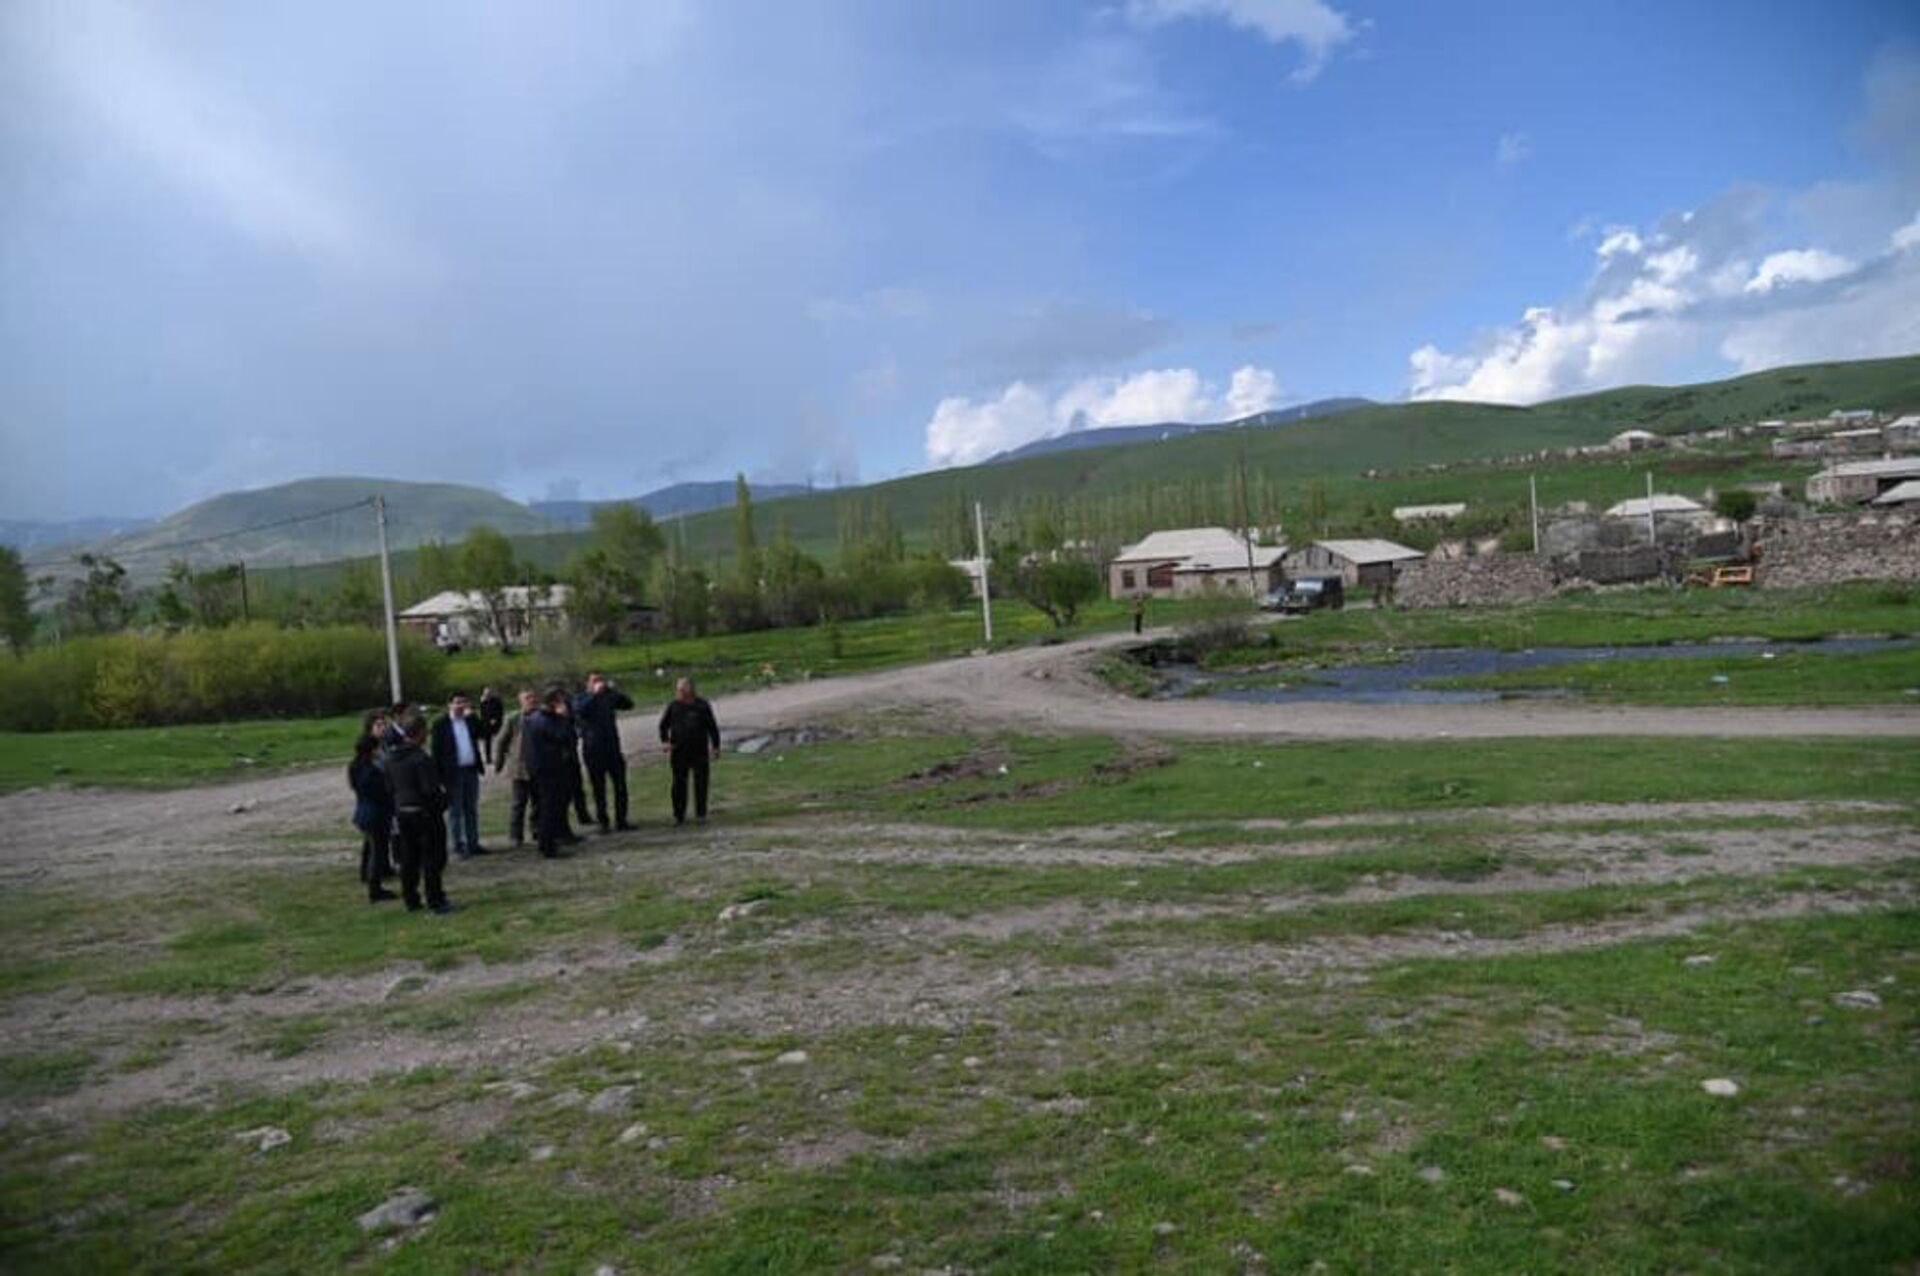 Կութ գյուղն ու դպրոցը հայտնվել են ադրբեջանական զինծառայողների նշանառության տակ. ՄԻՊ - Sputnik Արմենիա, 1920, 16.05.2021